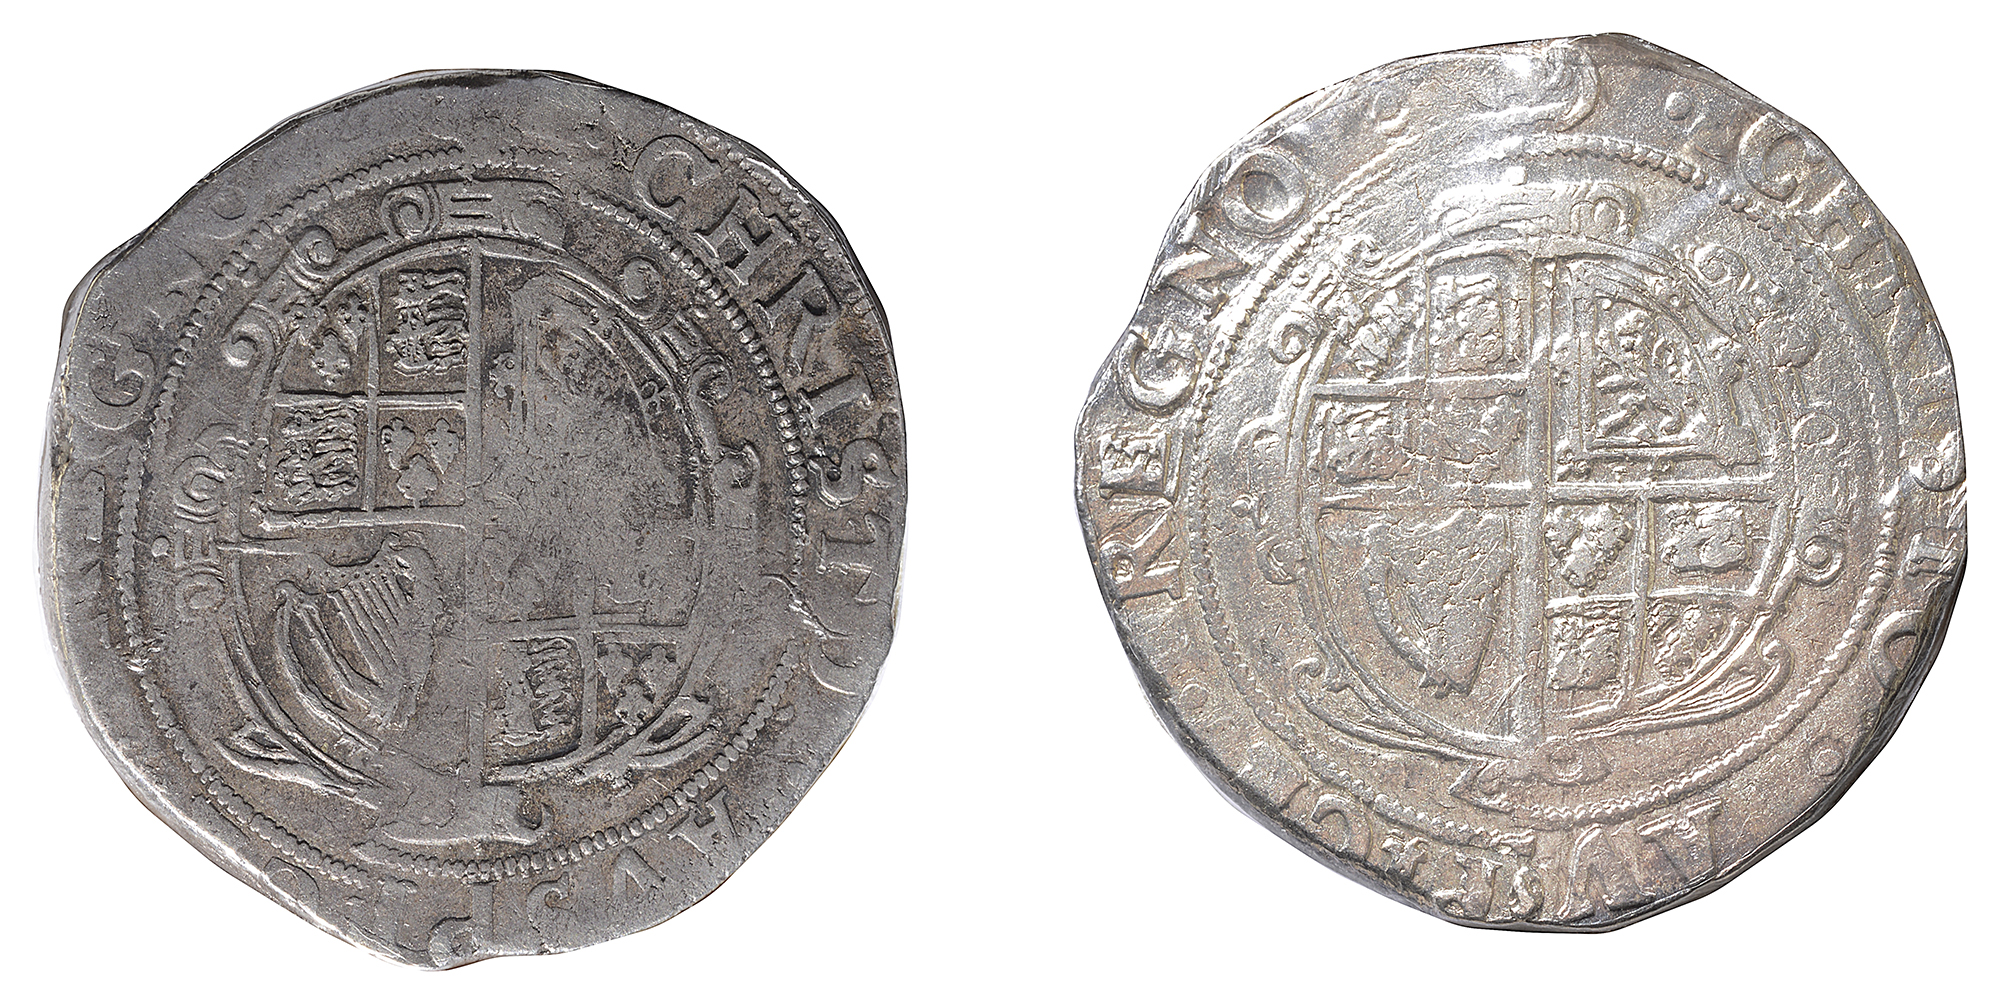 Charles I (1625-49) silver half crownsfirst CAROLVS G MAG BRT FRA ET HIB REX, Charles I, crowned & - Image 2 of 2